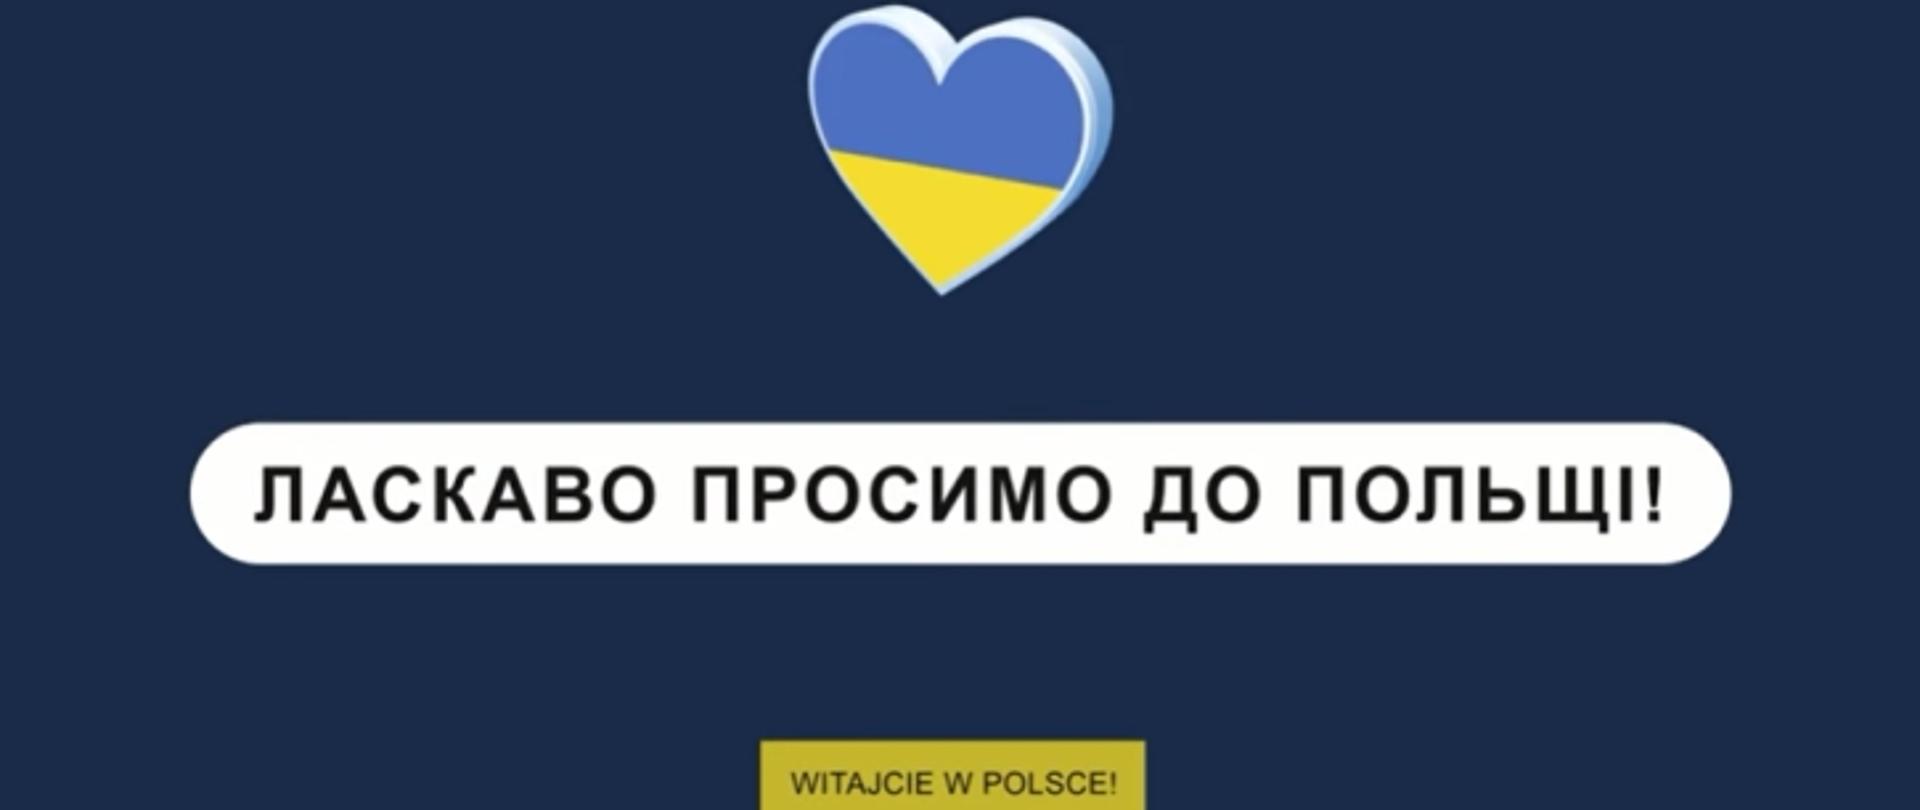 Serce w kolorze flagi ukraińskiej niebiesko żółtej, pod nim czarny napis na białym tle po ukraińsku "Witajcie w Polsce" a niżej w żółtym prostokącie po polsku. Tło grafiki granatowe.